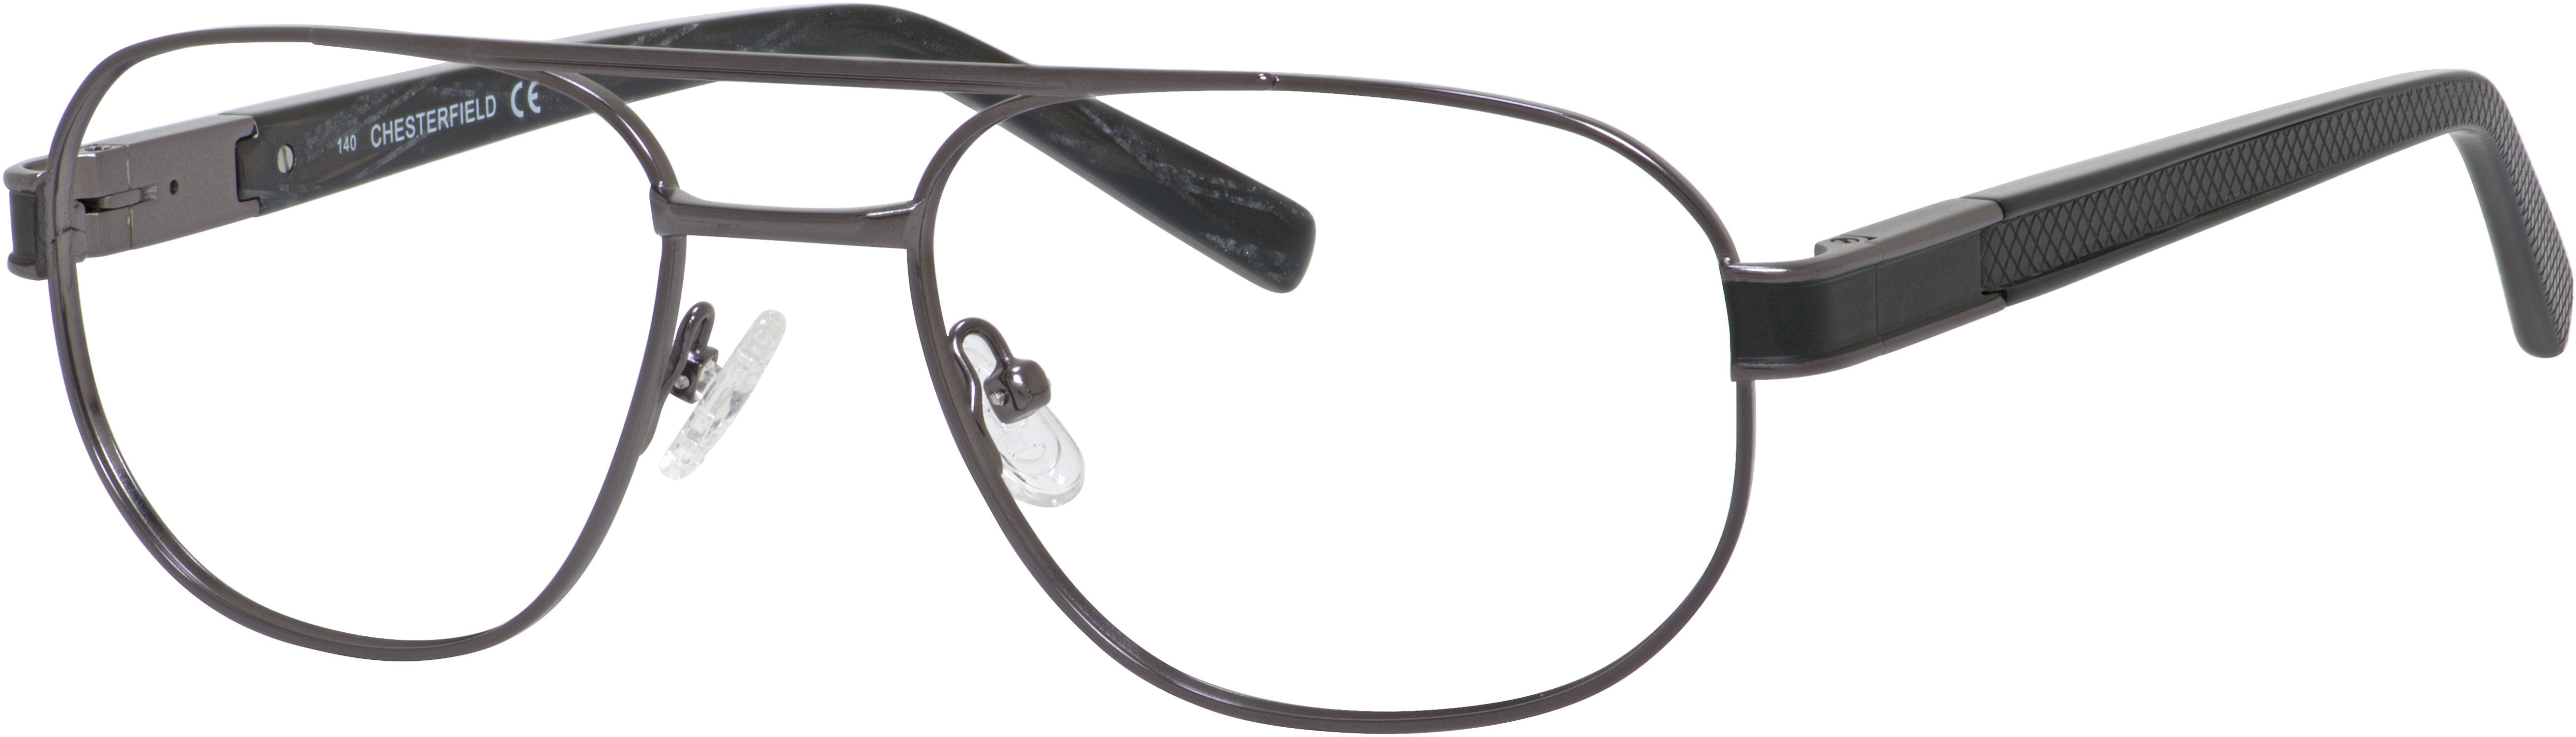  Chesterfield 881 Aviator Eyeglasses 0EZ7-0EZ7  Gunmetal (00 Demo Lens)